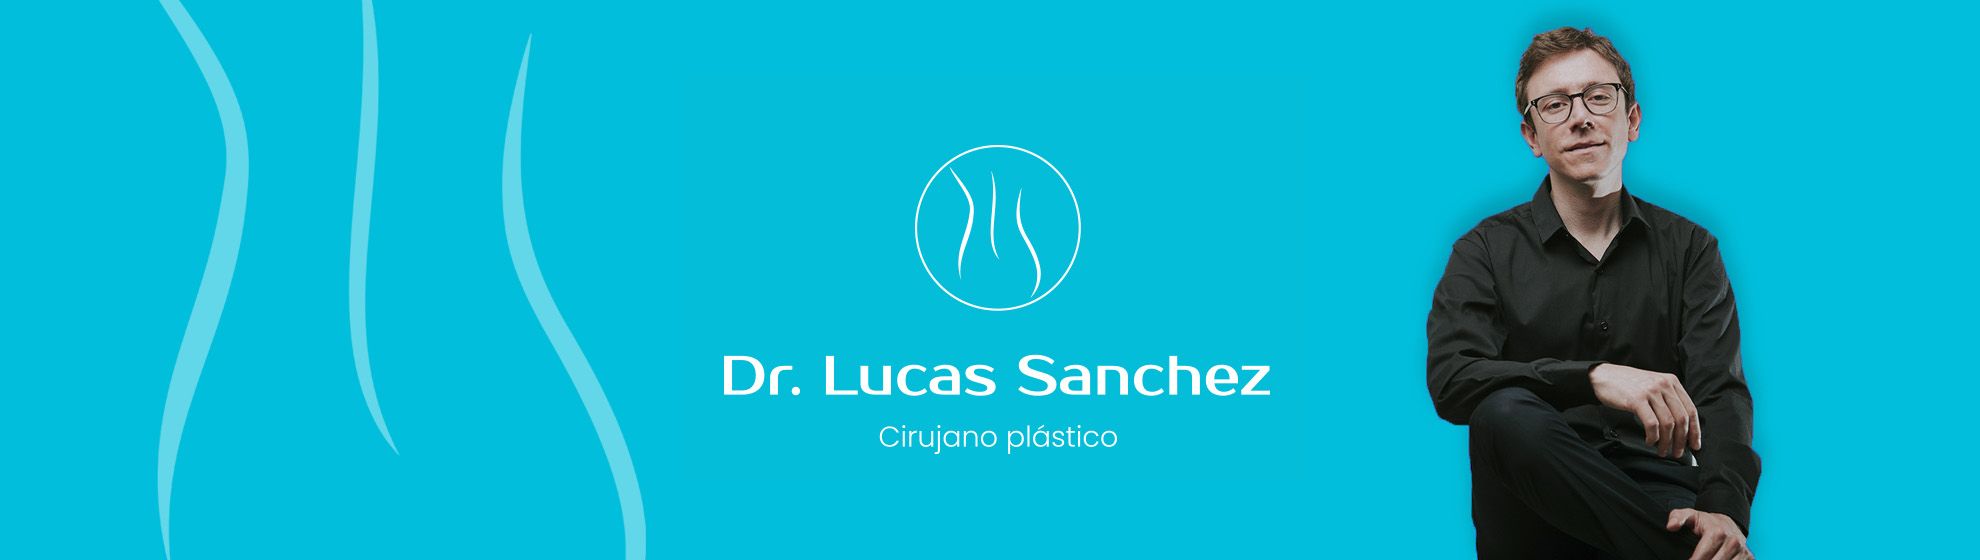 Dr. Lucas Sánchez